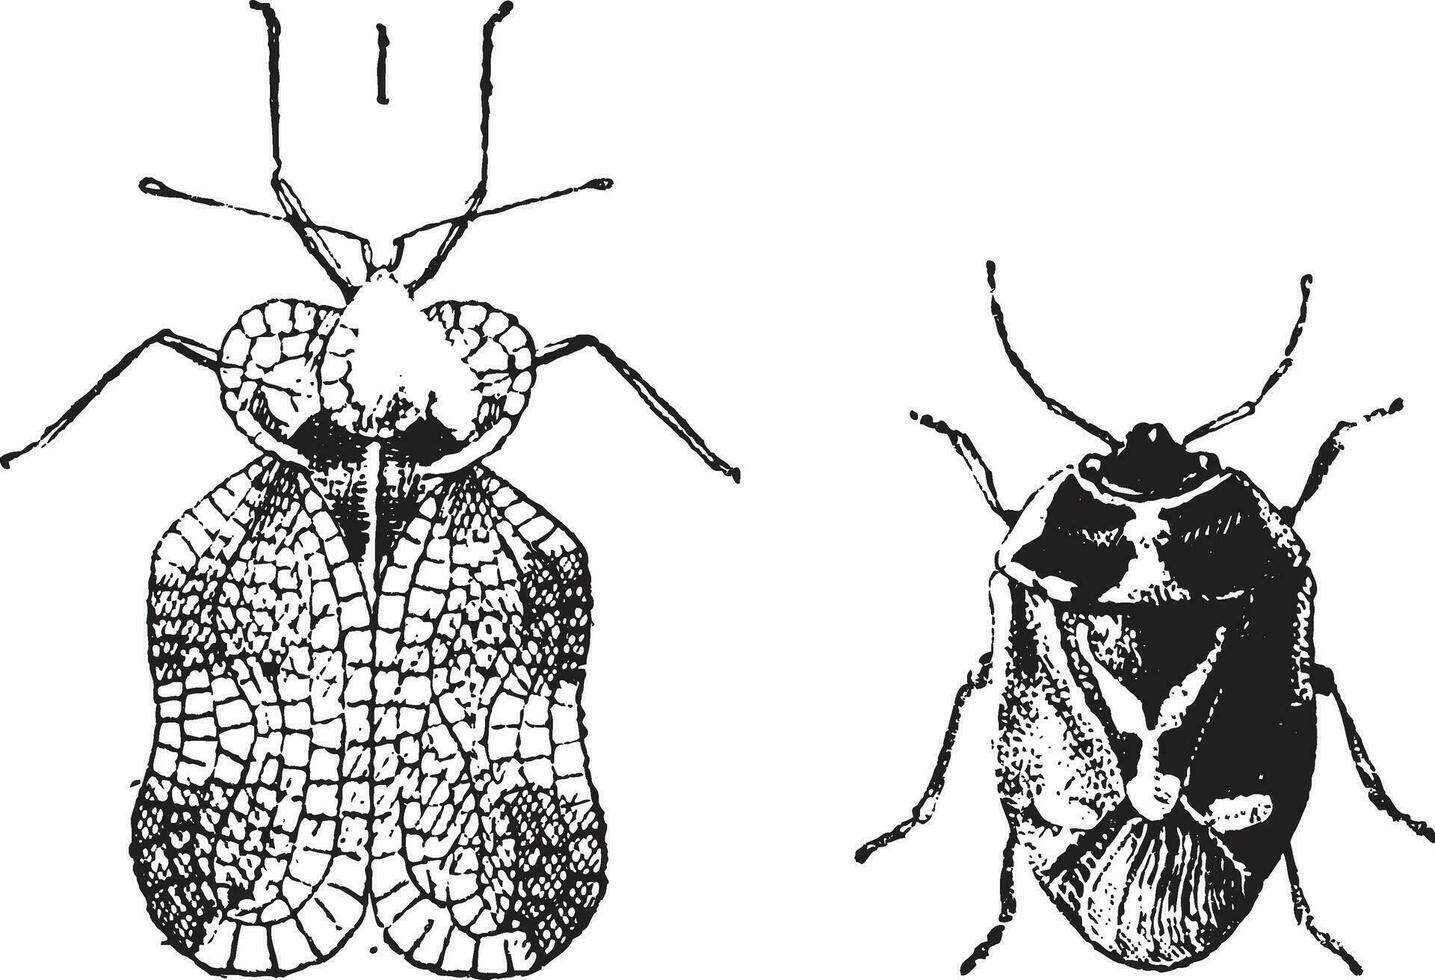 vänster - hemiptera heteroptera, tiger insekt eller spets insekt, rätt - nezara viridula eller sydlig grön stank insekt, årgång gravyr. vektor